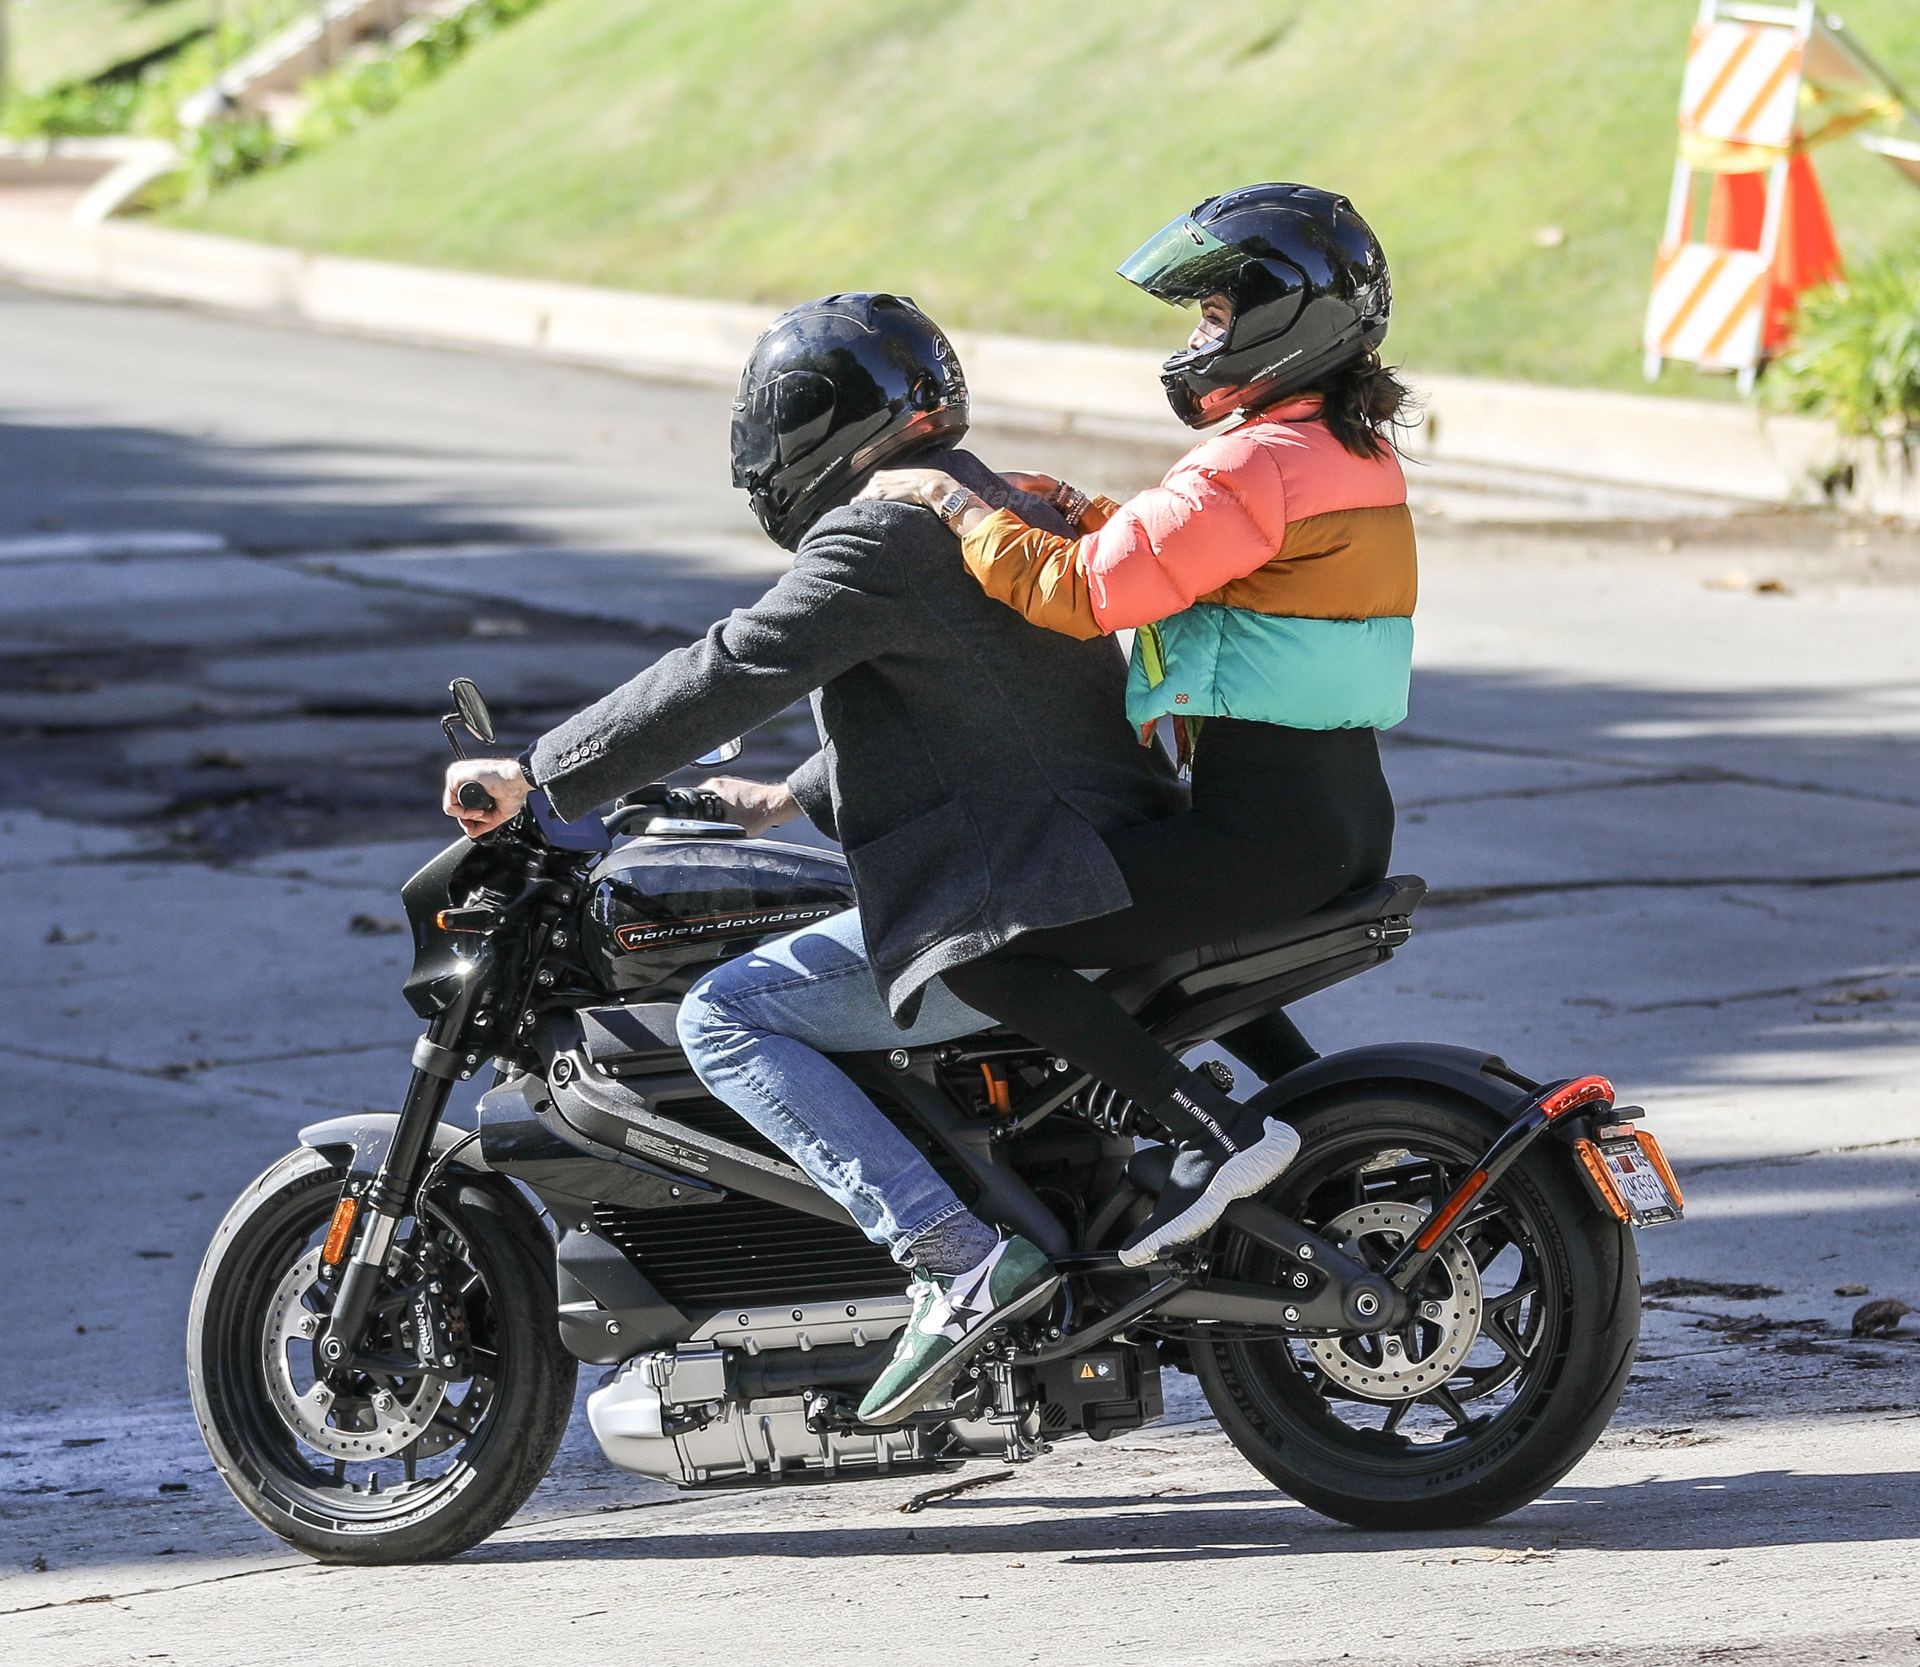 Ben Affleck & Ana de Armas are Seen on a Hot Ride (47 Photos)